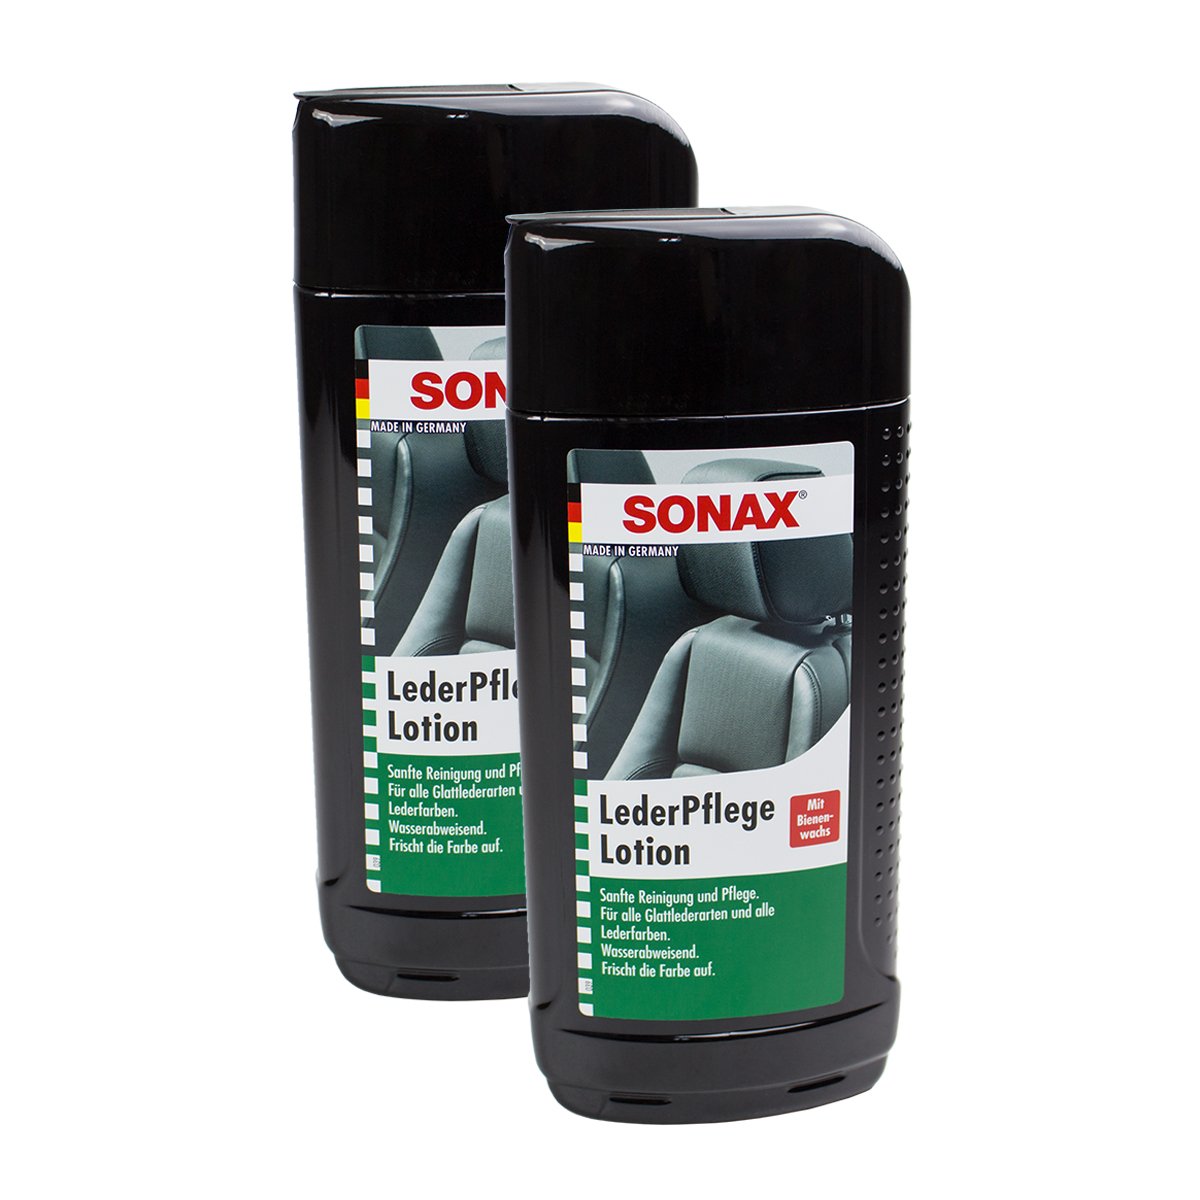 SONAX 2X 02912000 LederPflegeLotion mit Bienenwachs und Silikonöle 500ml von SONAX